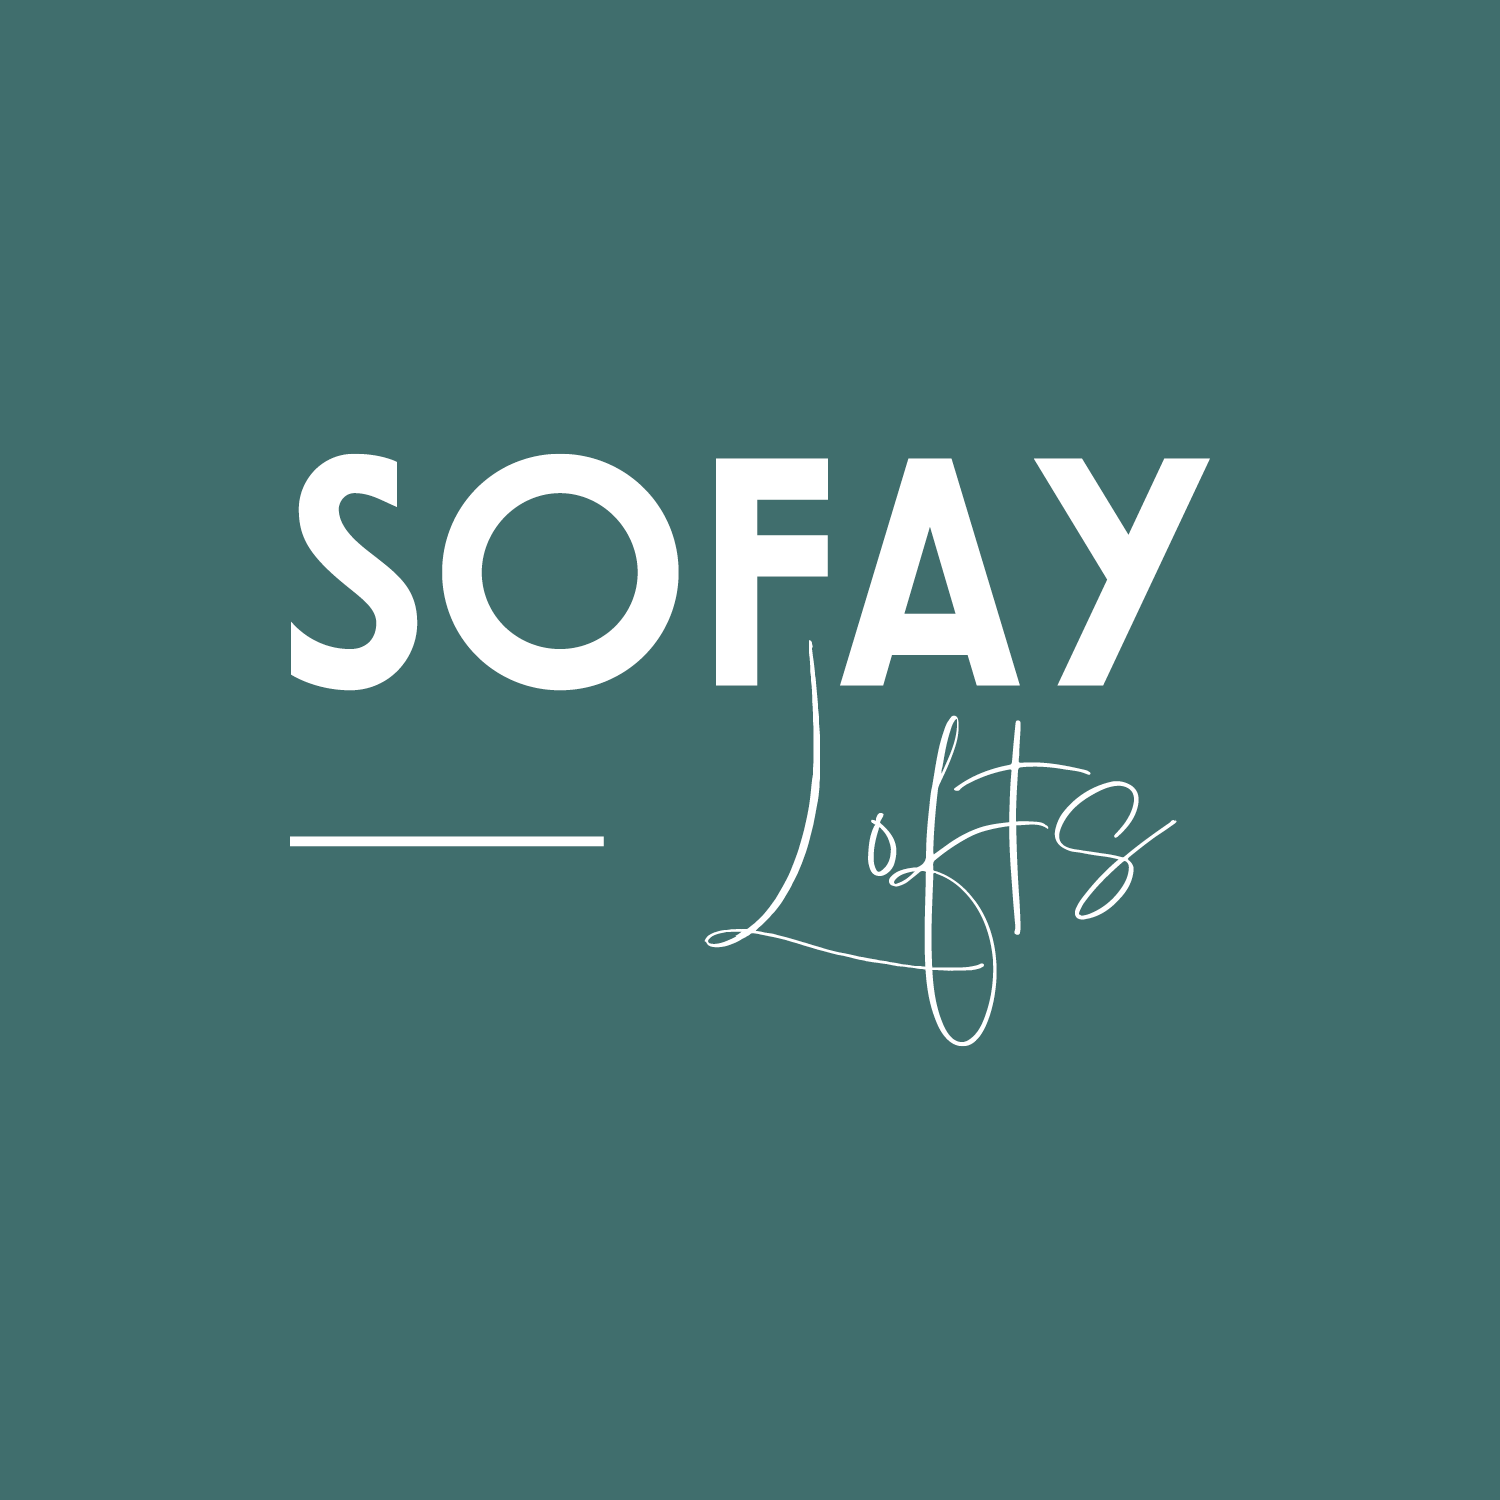 SoFay Lofts